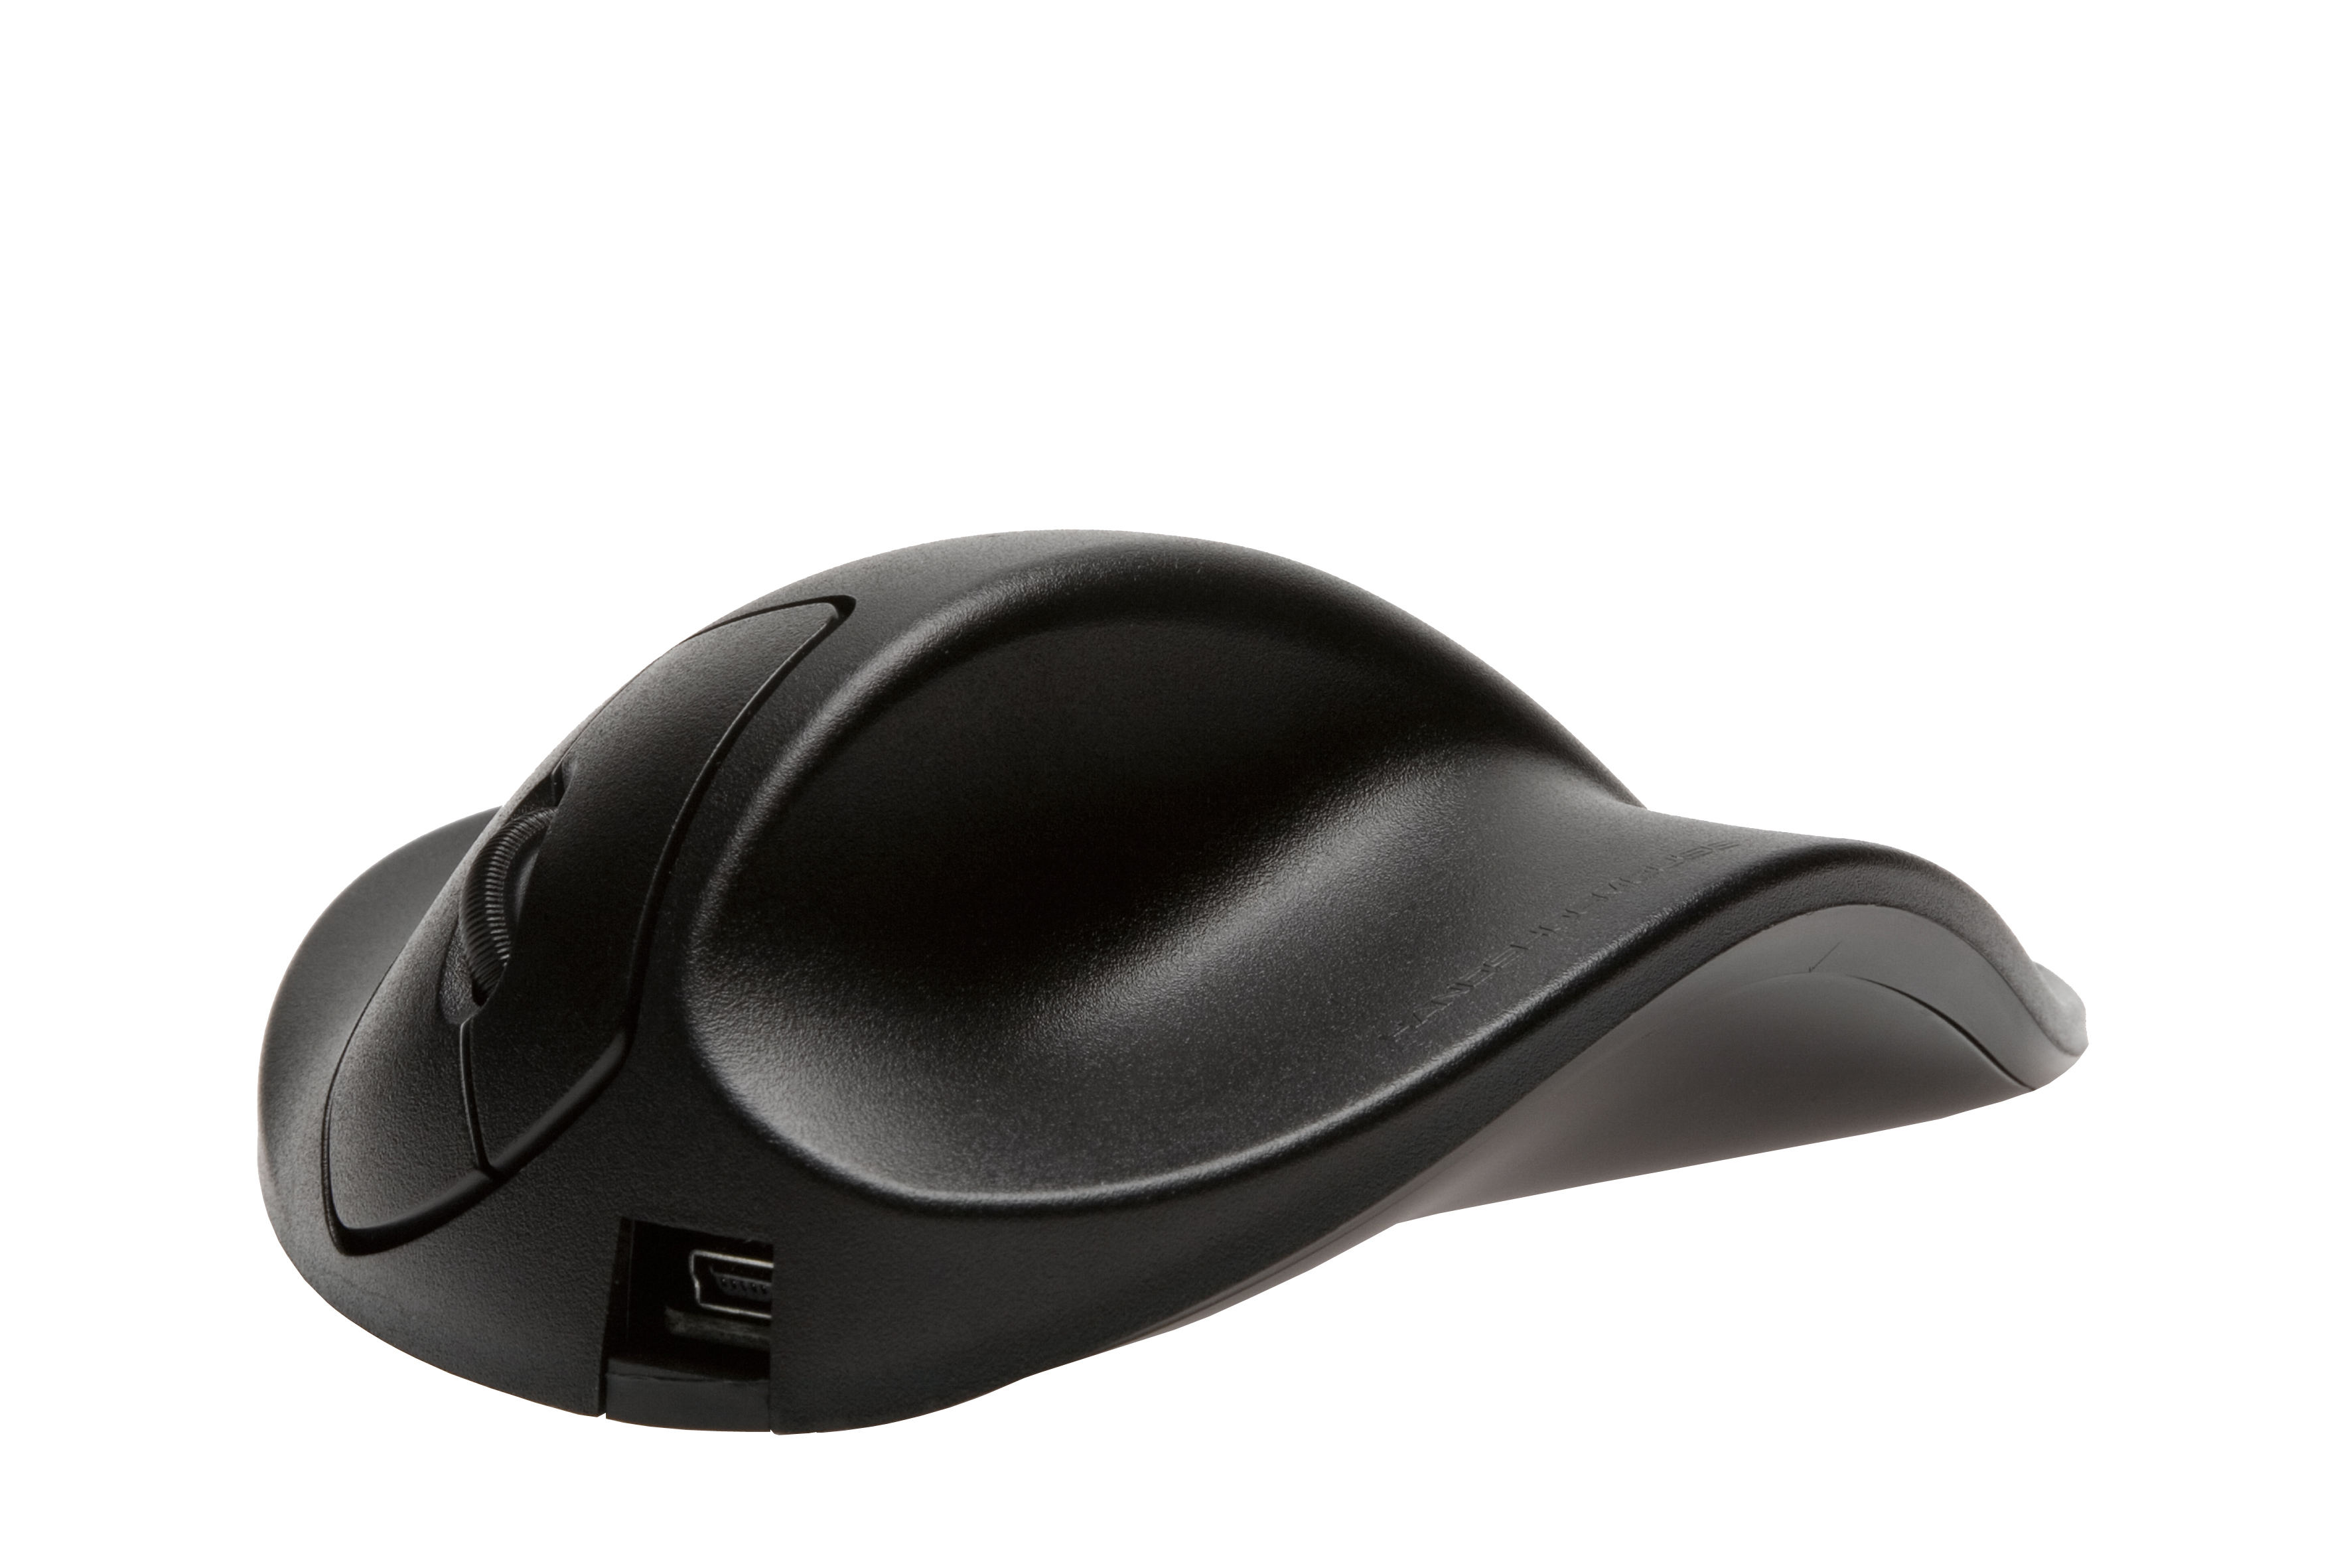 HIPPUS LS2WL ergonomische Maus, schwarz